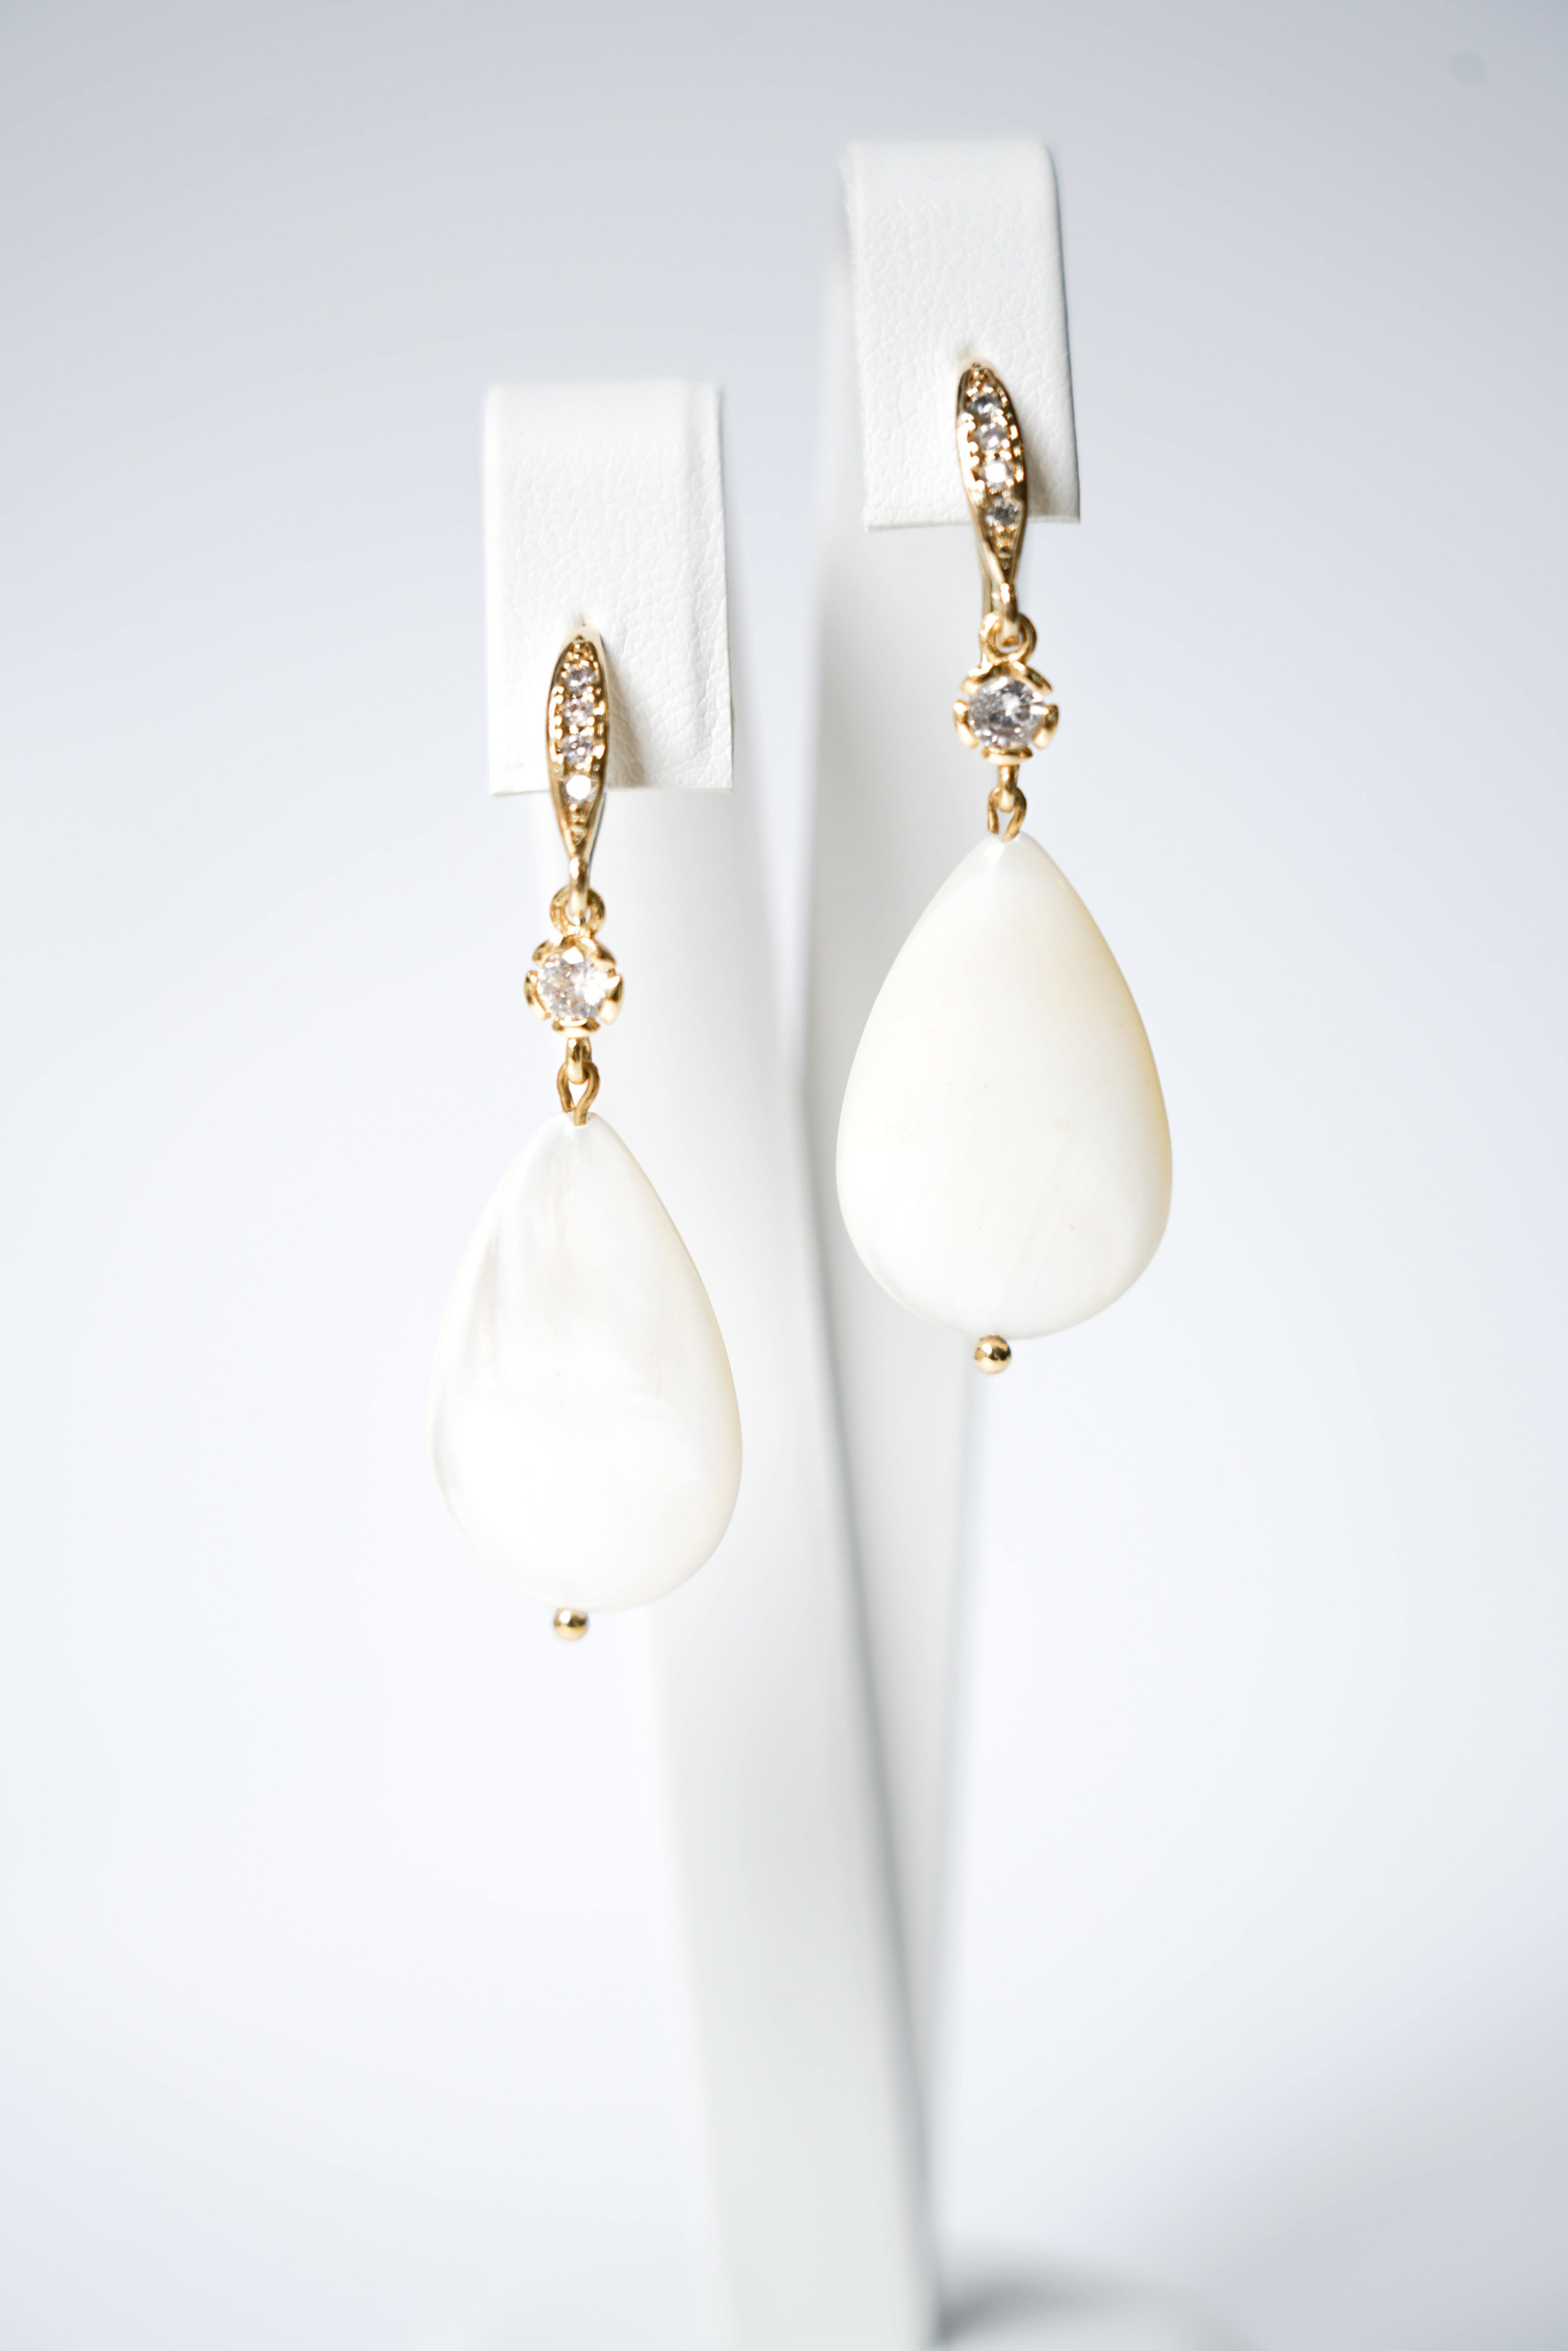 boucles d'oreilles en or avec des petites cristaux et une pièce de nacre blanche sur un fond blanc